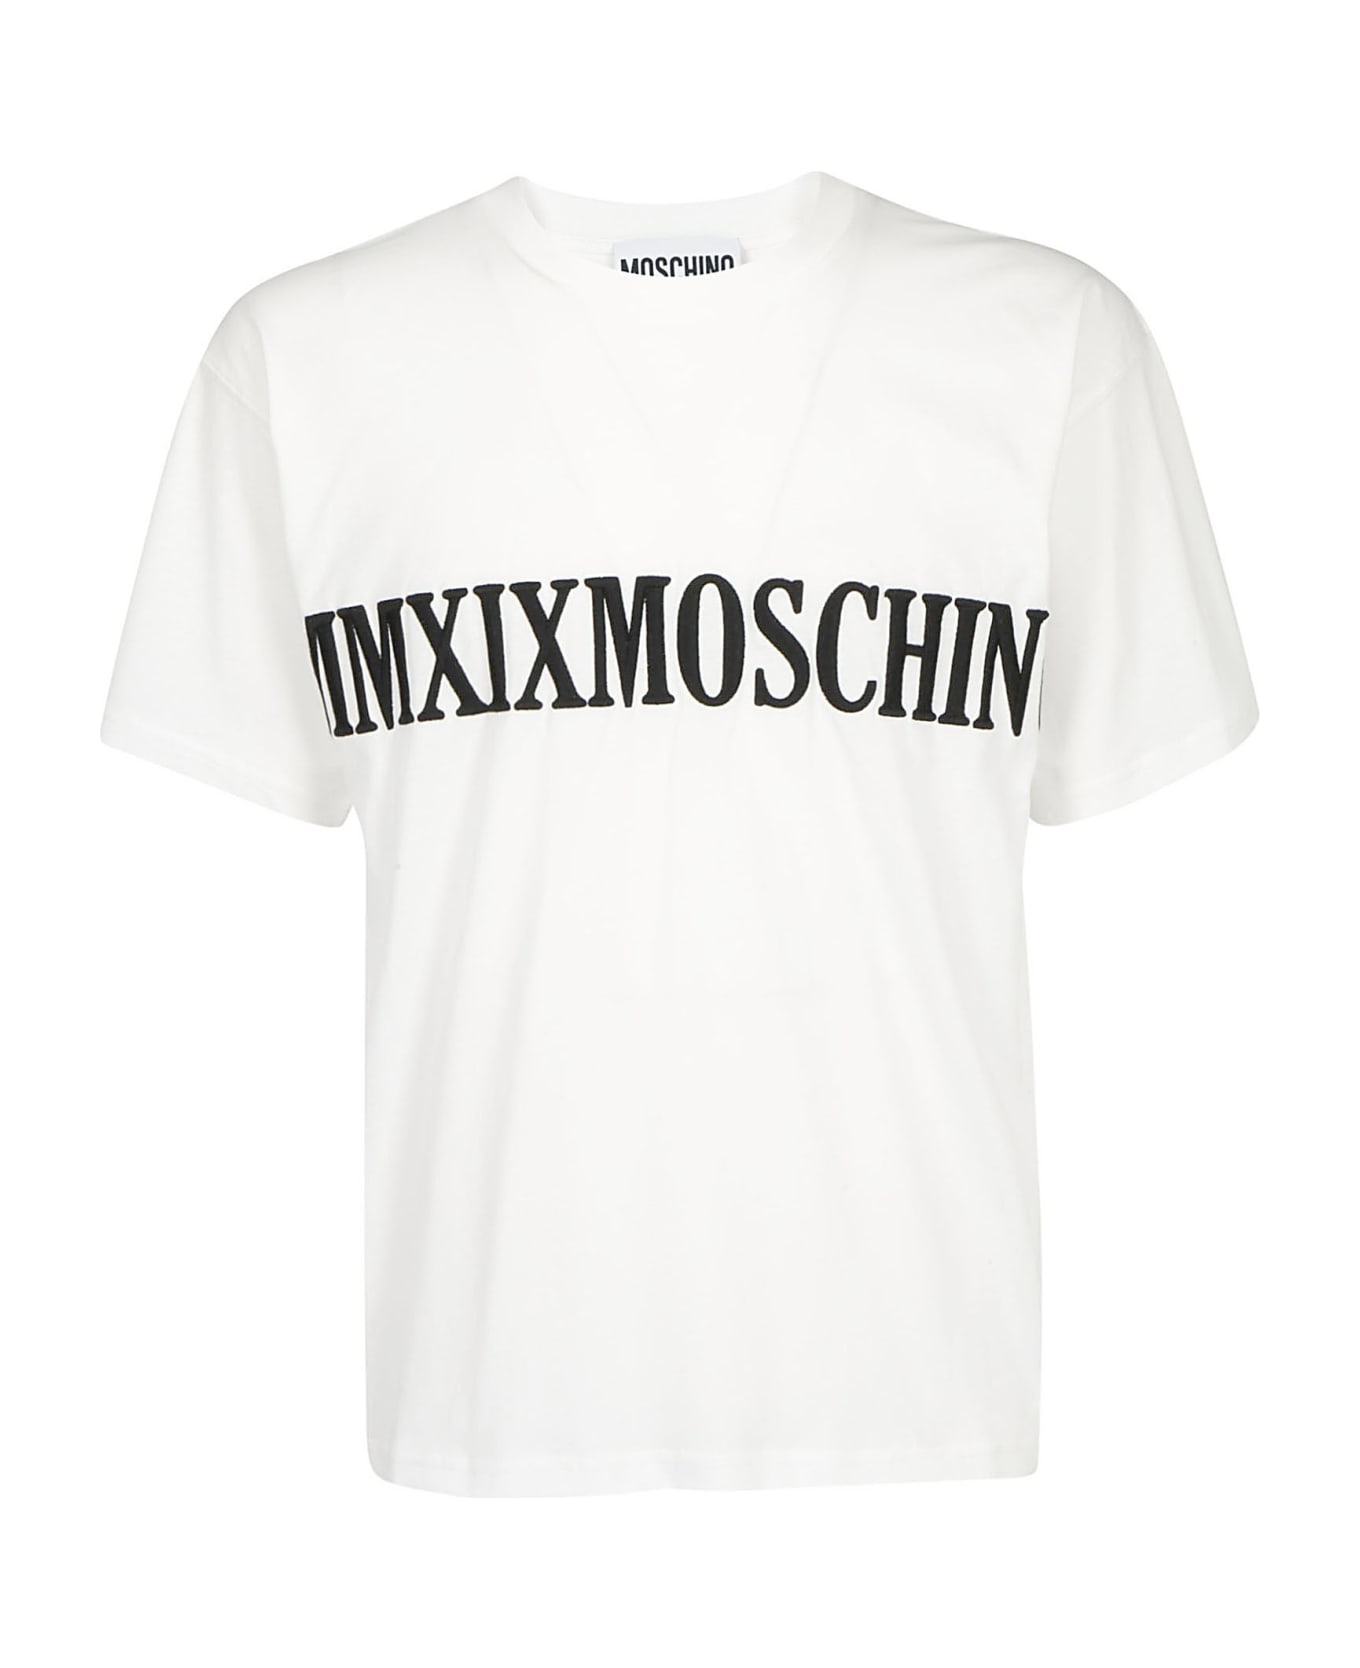 Moschino T-shirt | italist